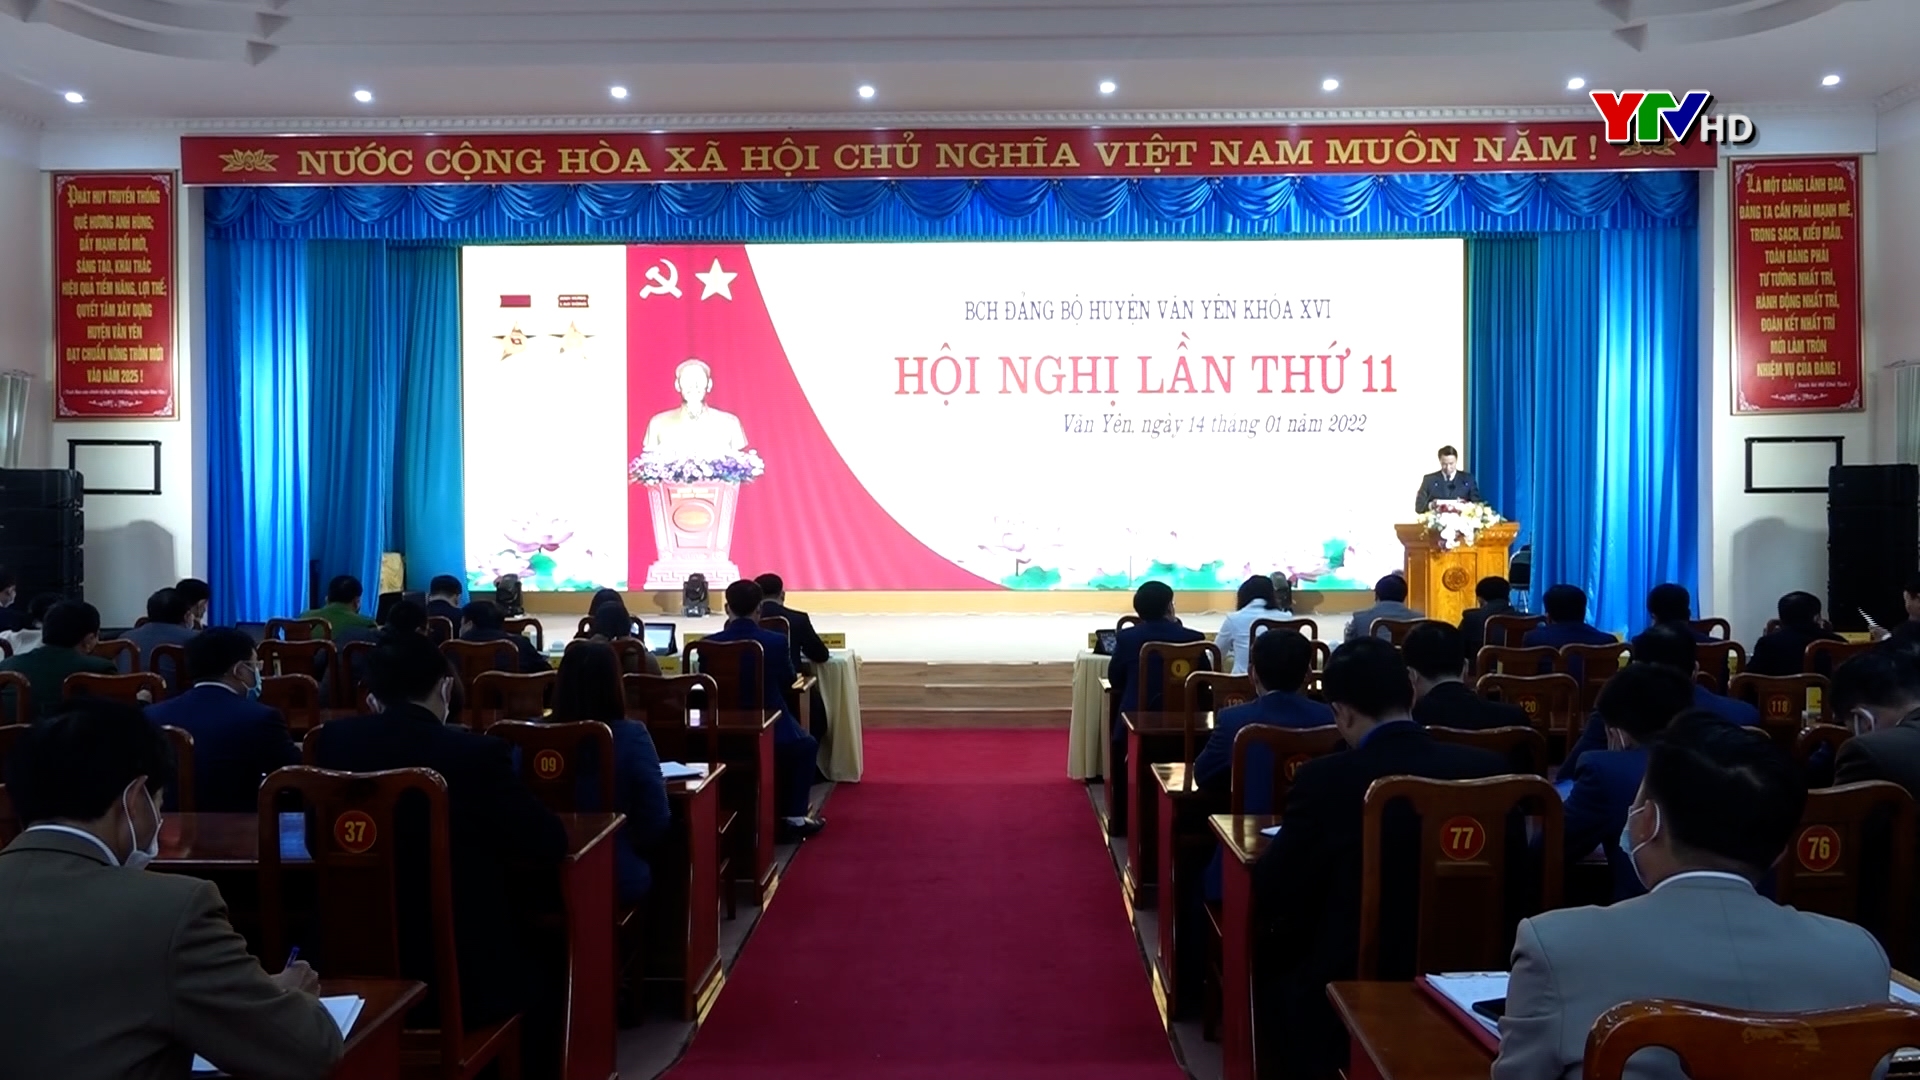 Hội nghị lần thứ 11 - Ban Chấp hành Đảng bộ huyện Văn Yên